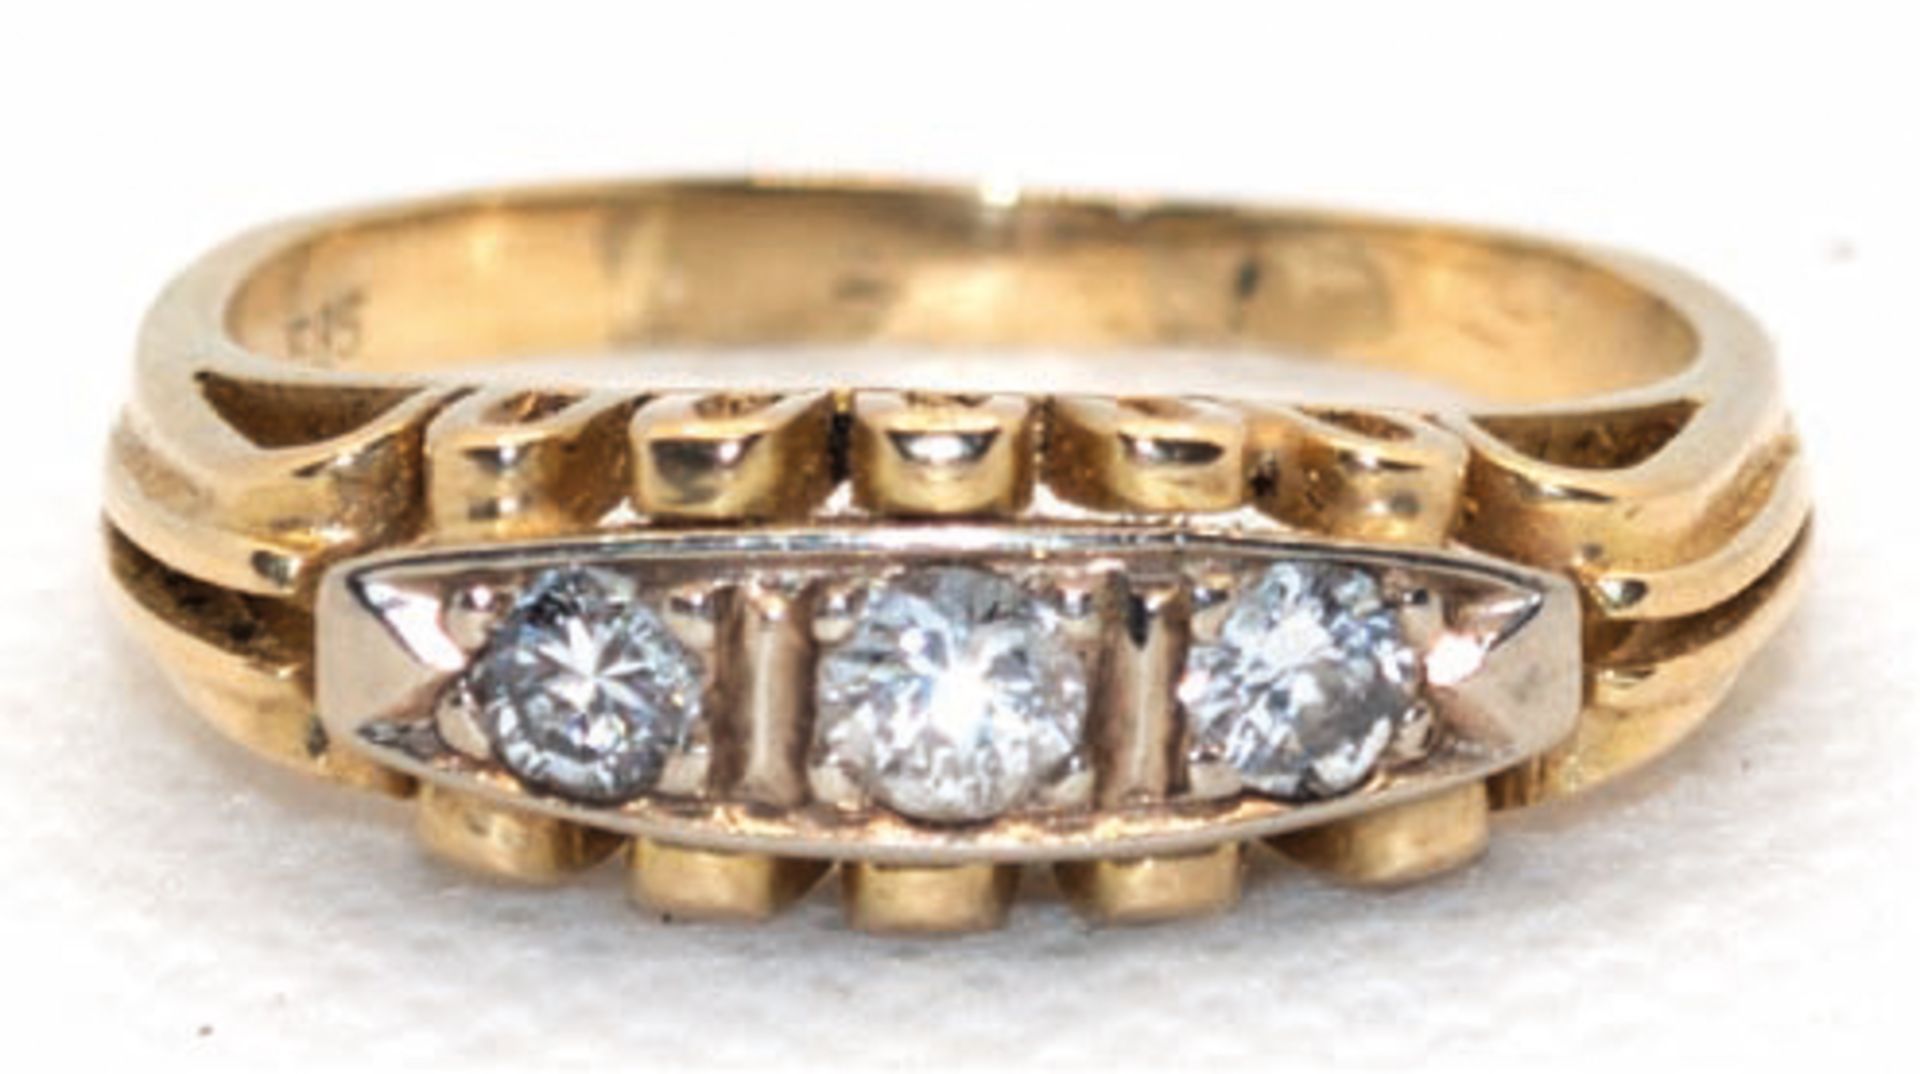 Art-Deco-Brillant-Ring, 585er GG/WG, korbartiger Ringkopf mit 3 in Reihe gefaßten  Brillanten von z